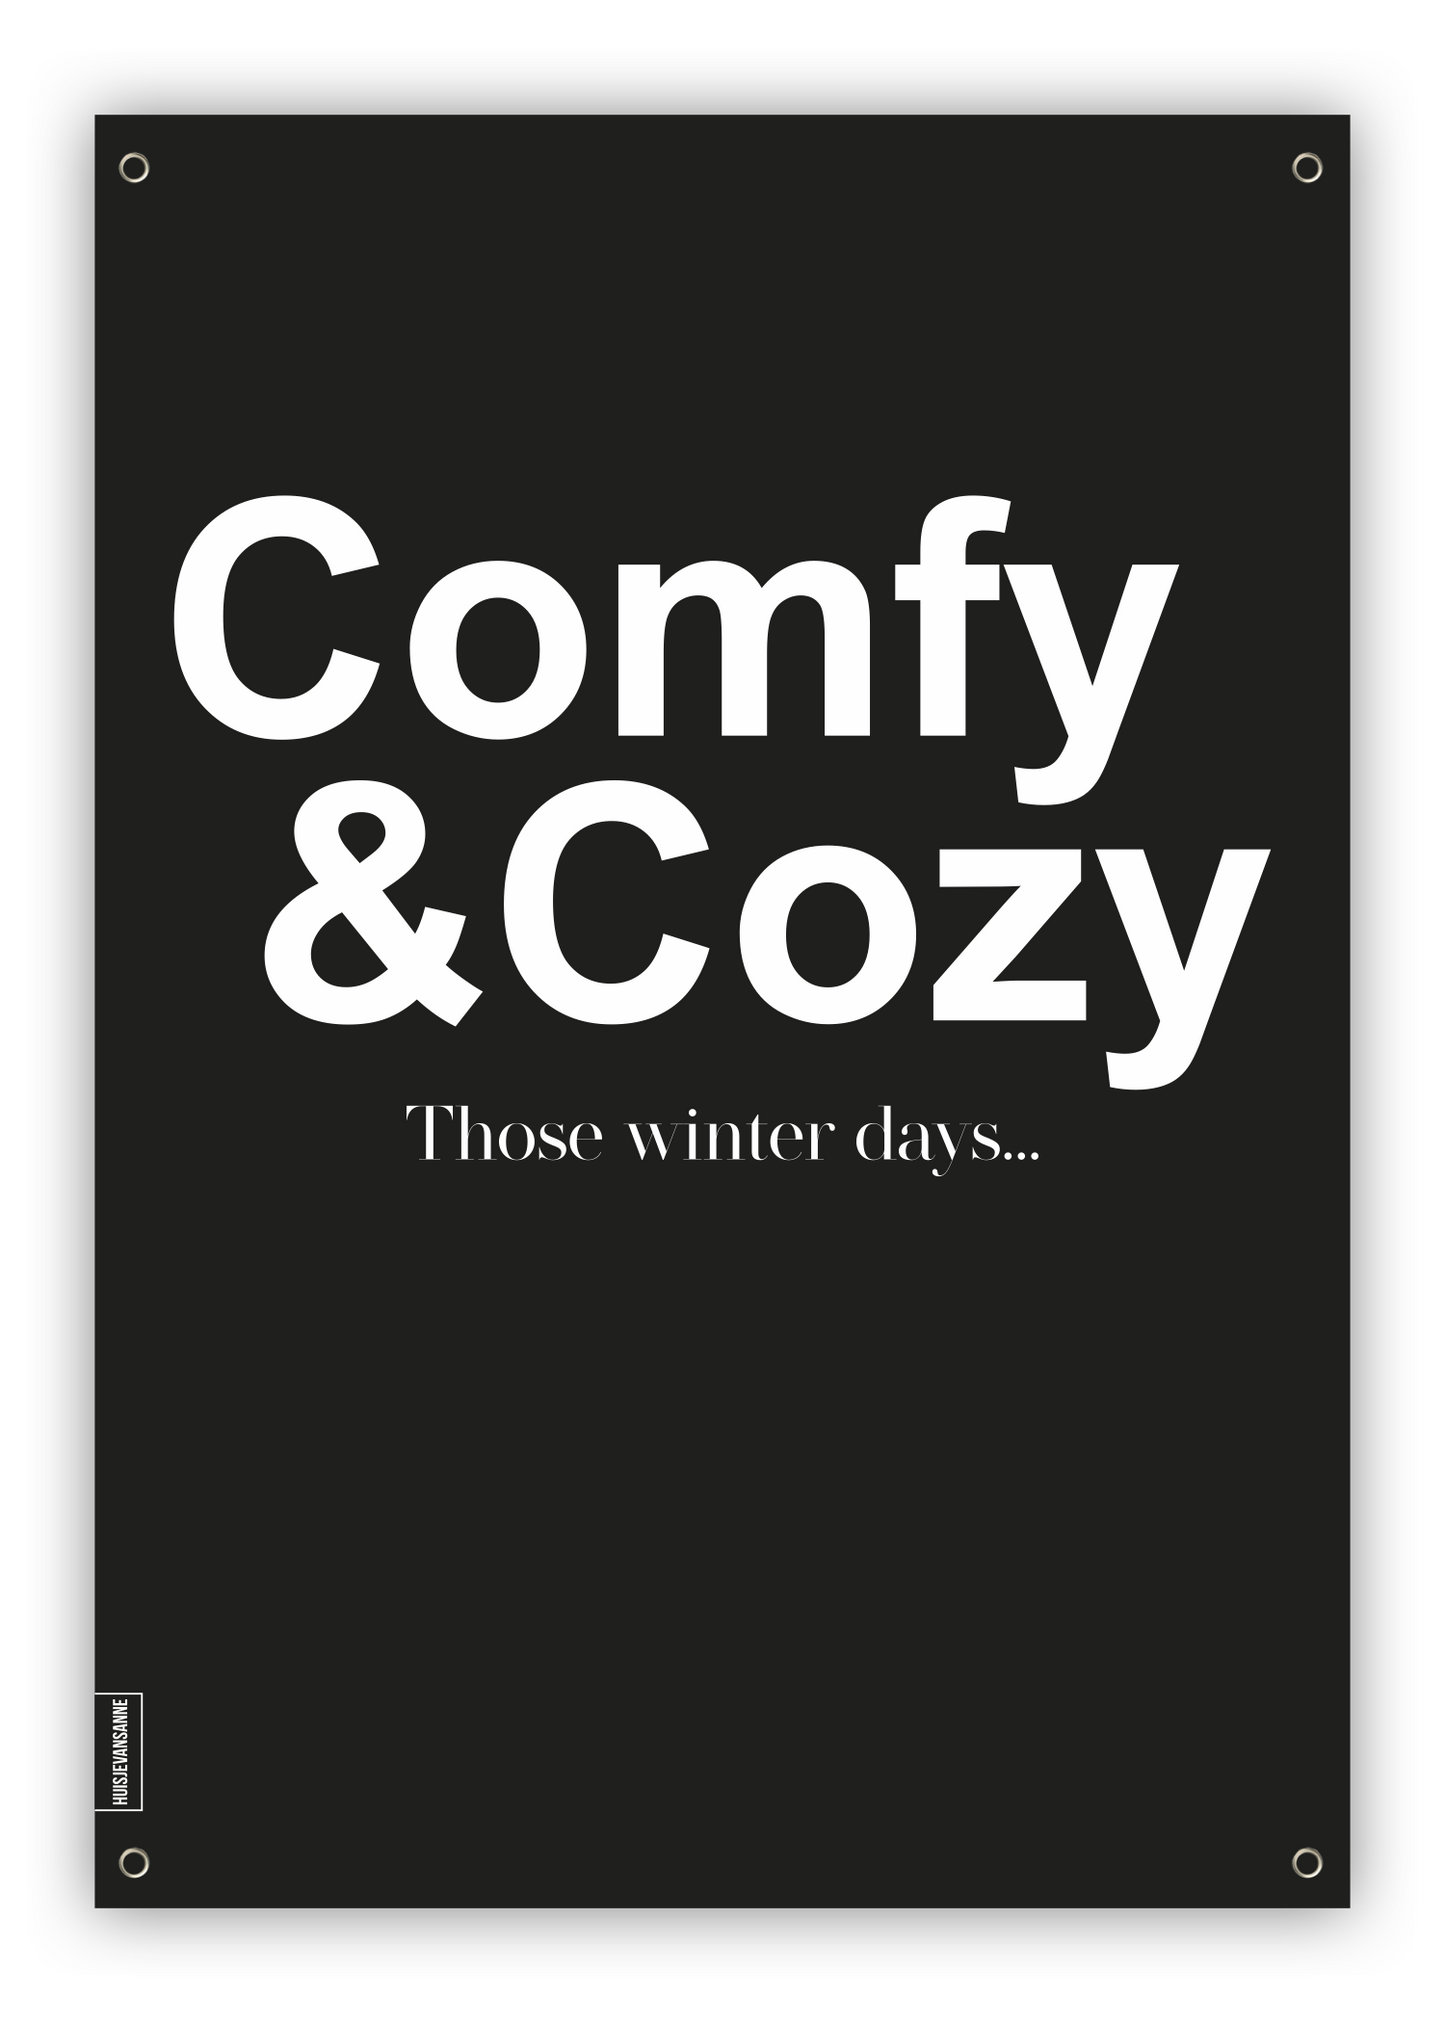 huisje van sanne tuinposter zwart wit met tekst comfy & cozy